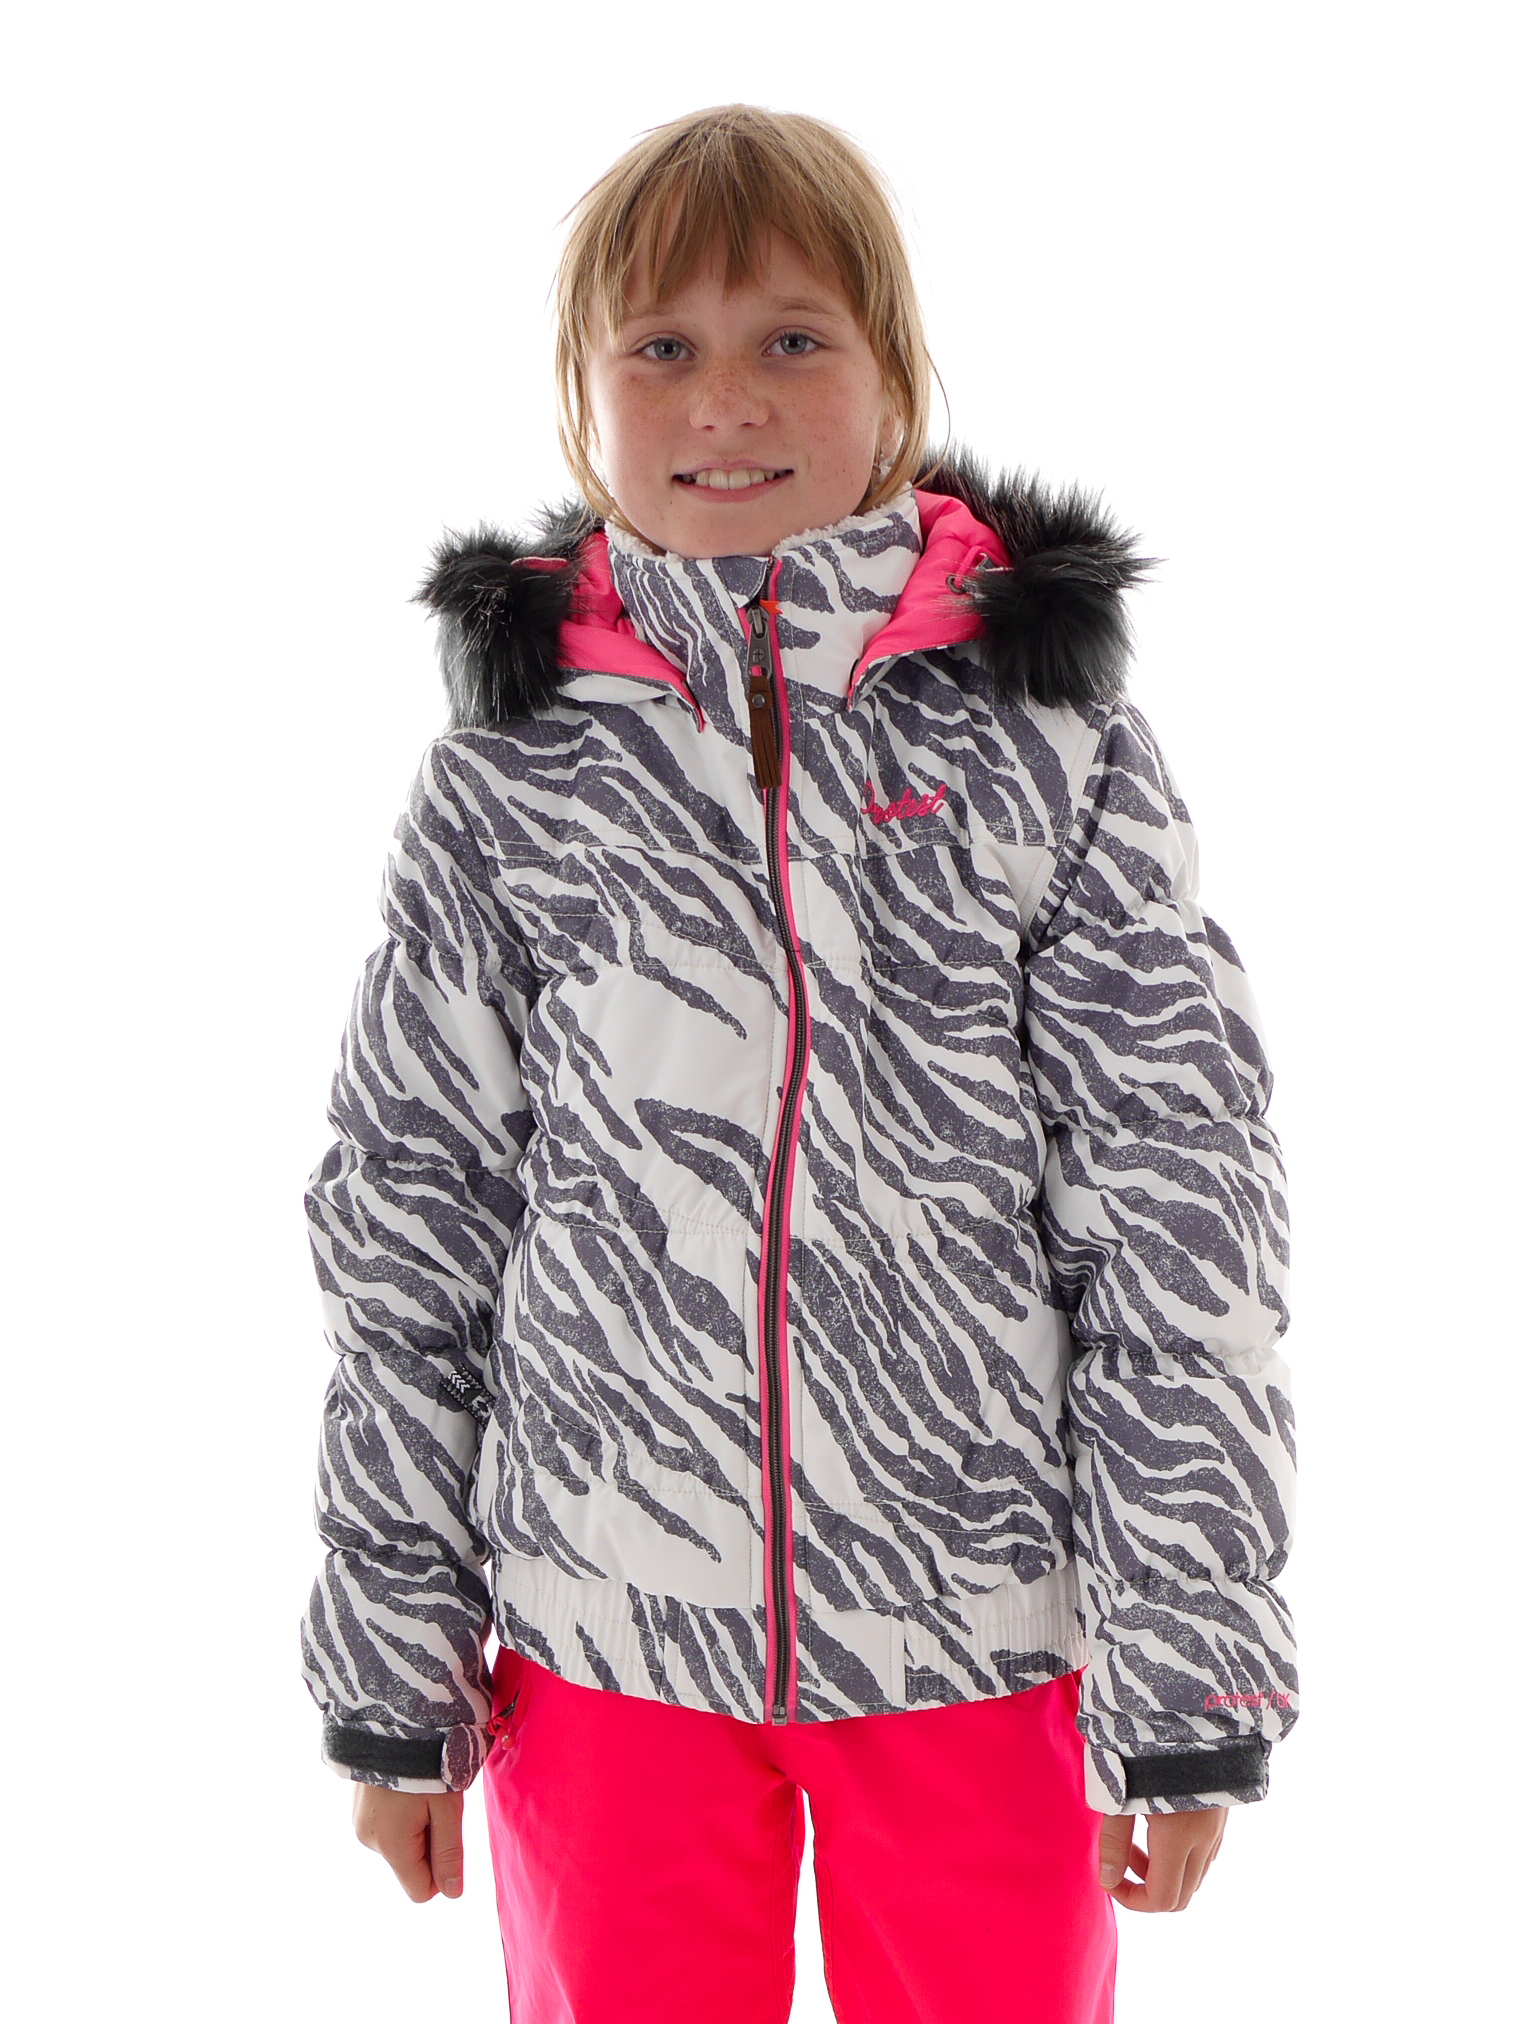 Girls ski jackets